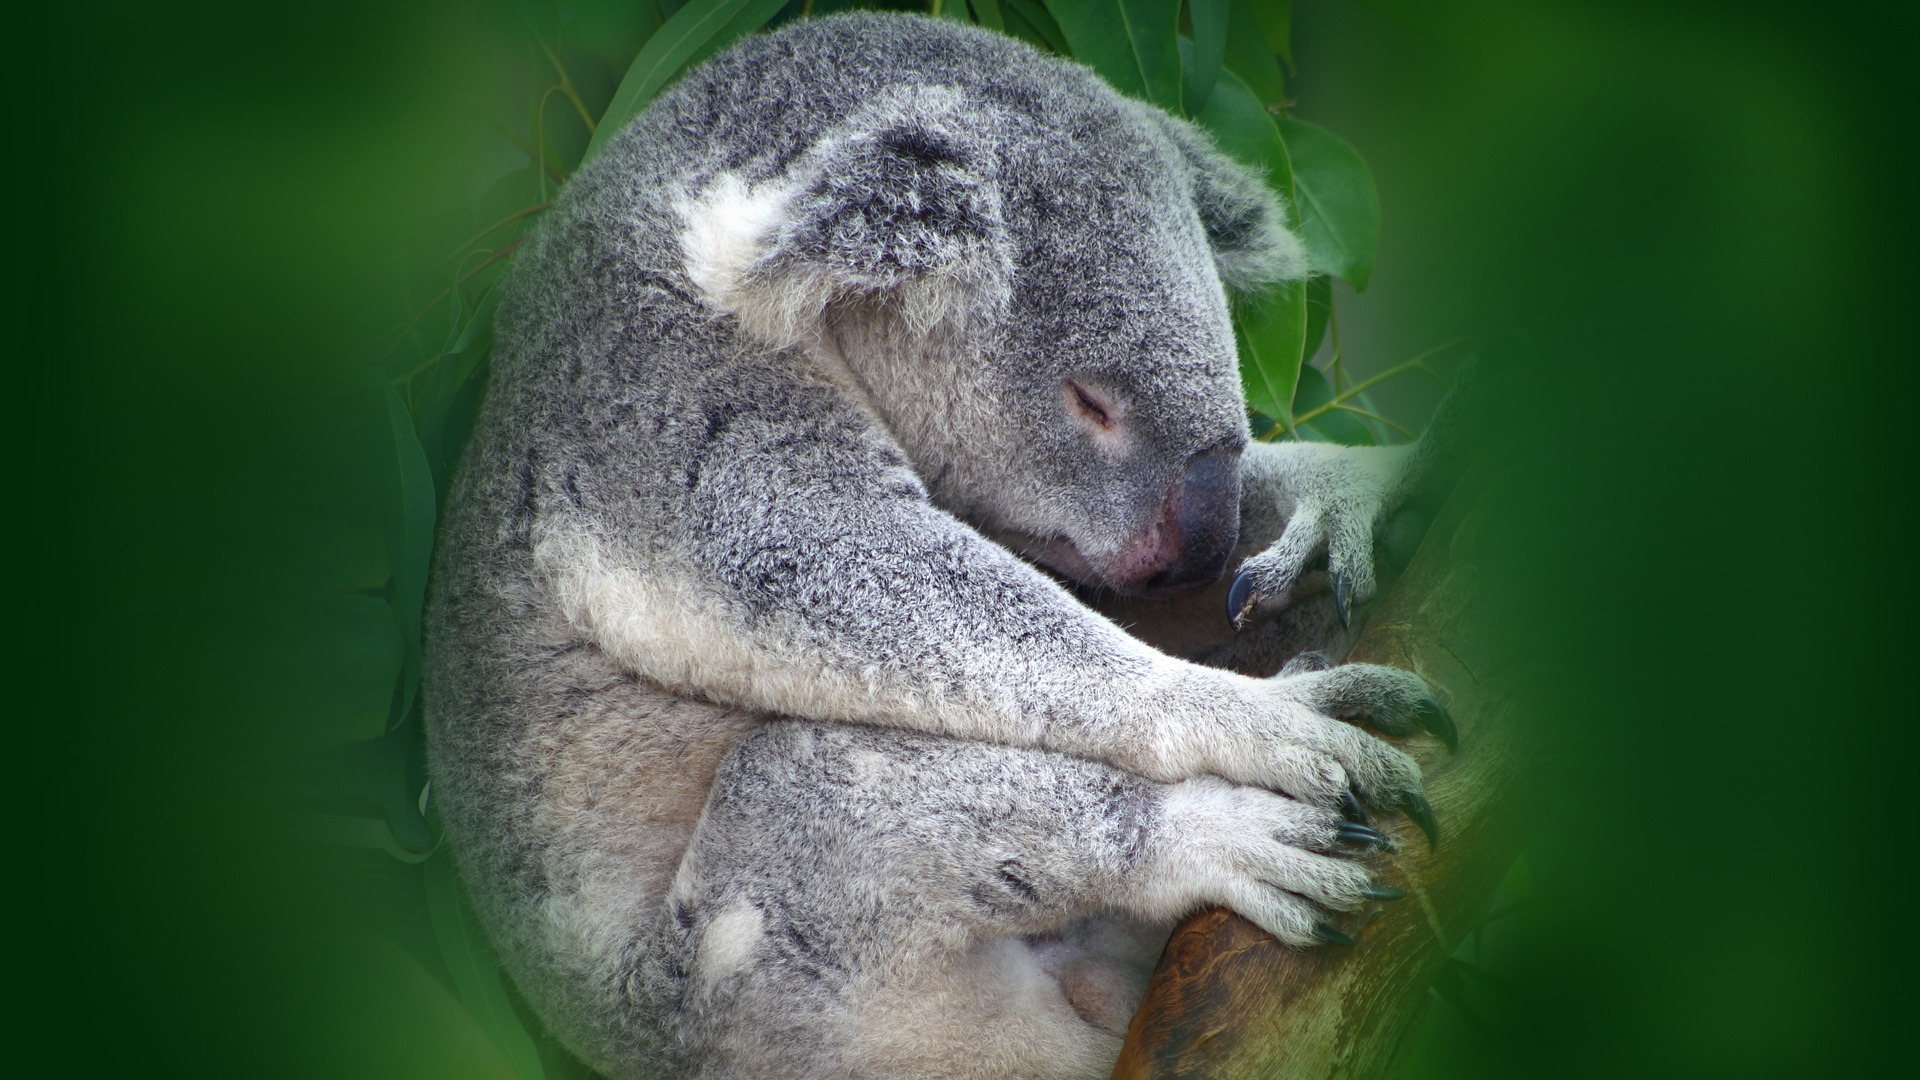 Koala Sleeping for 1920 x 1080 HDTV 1080p resolution